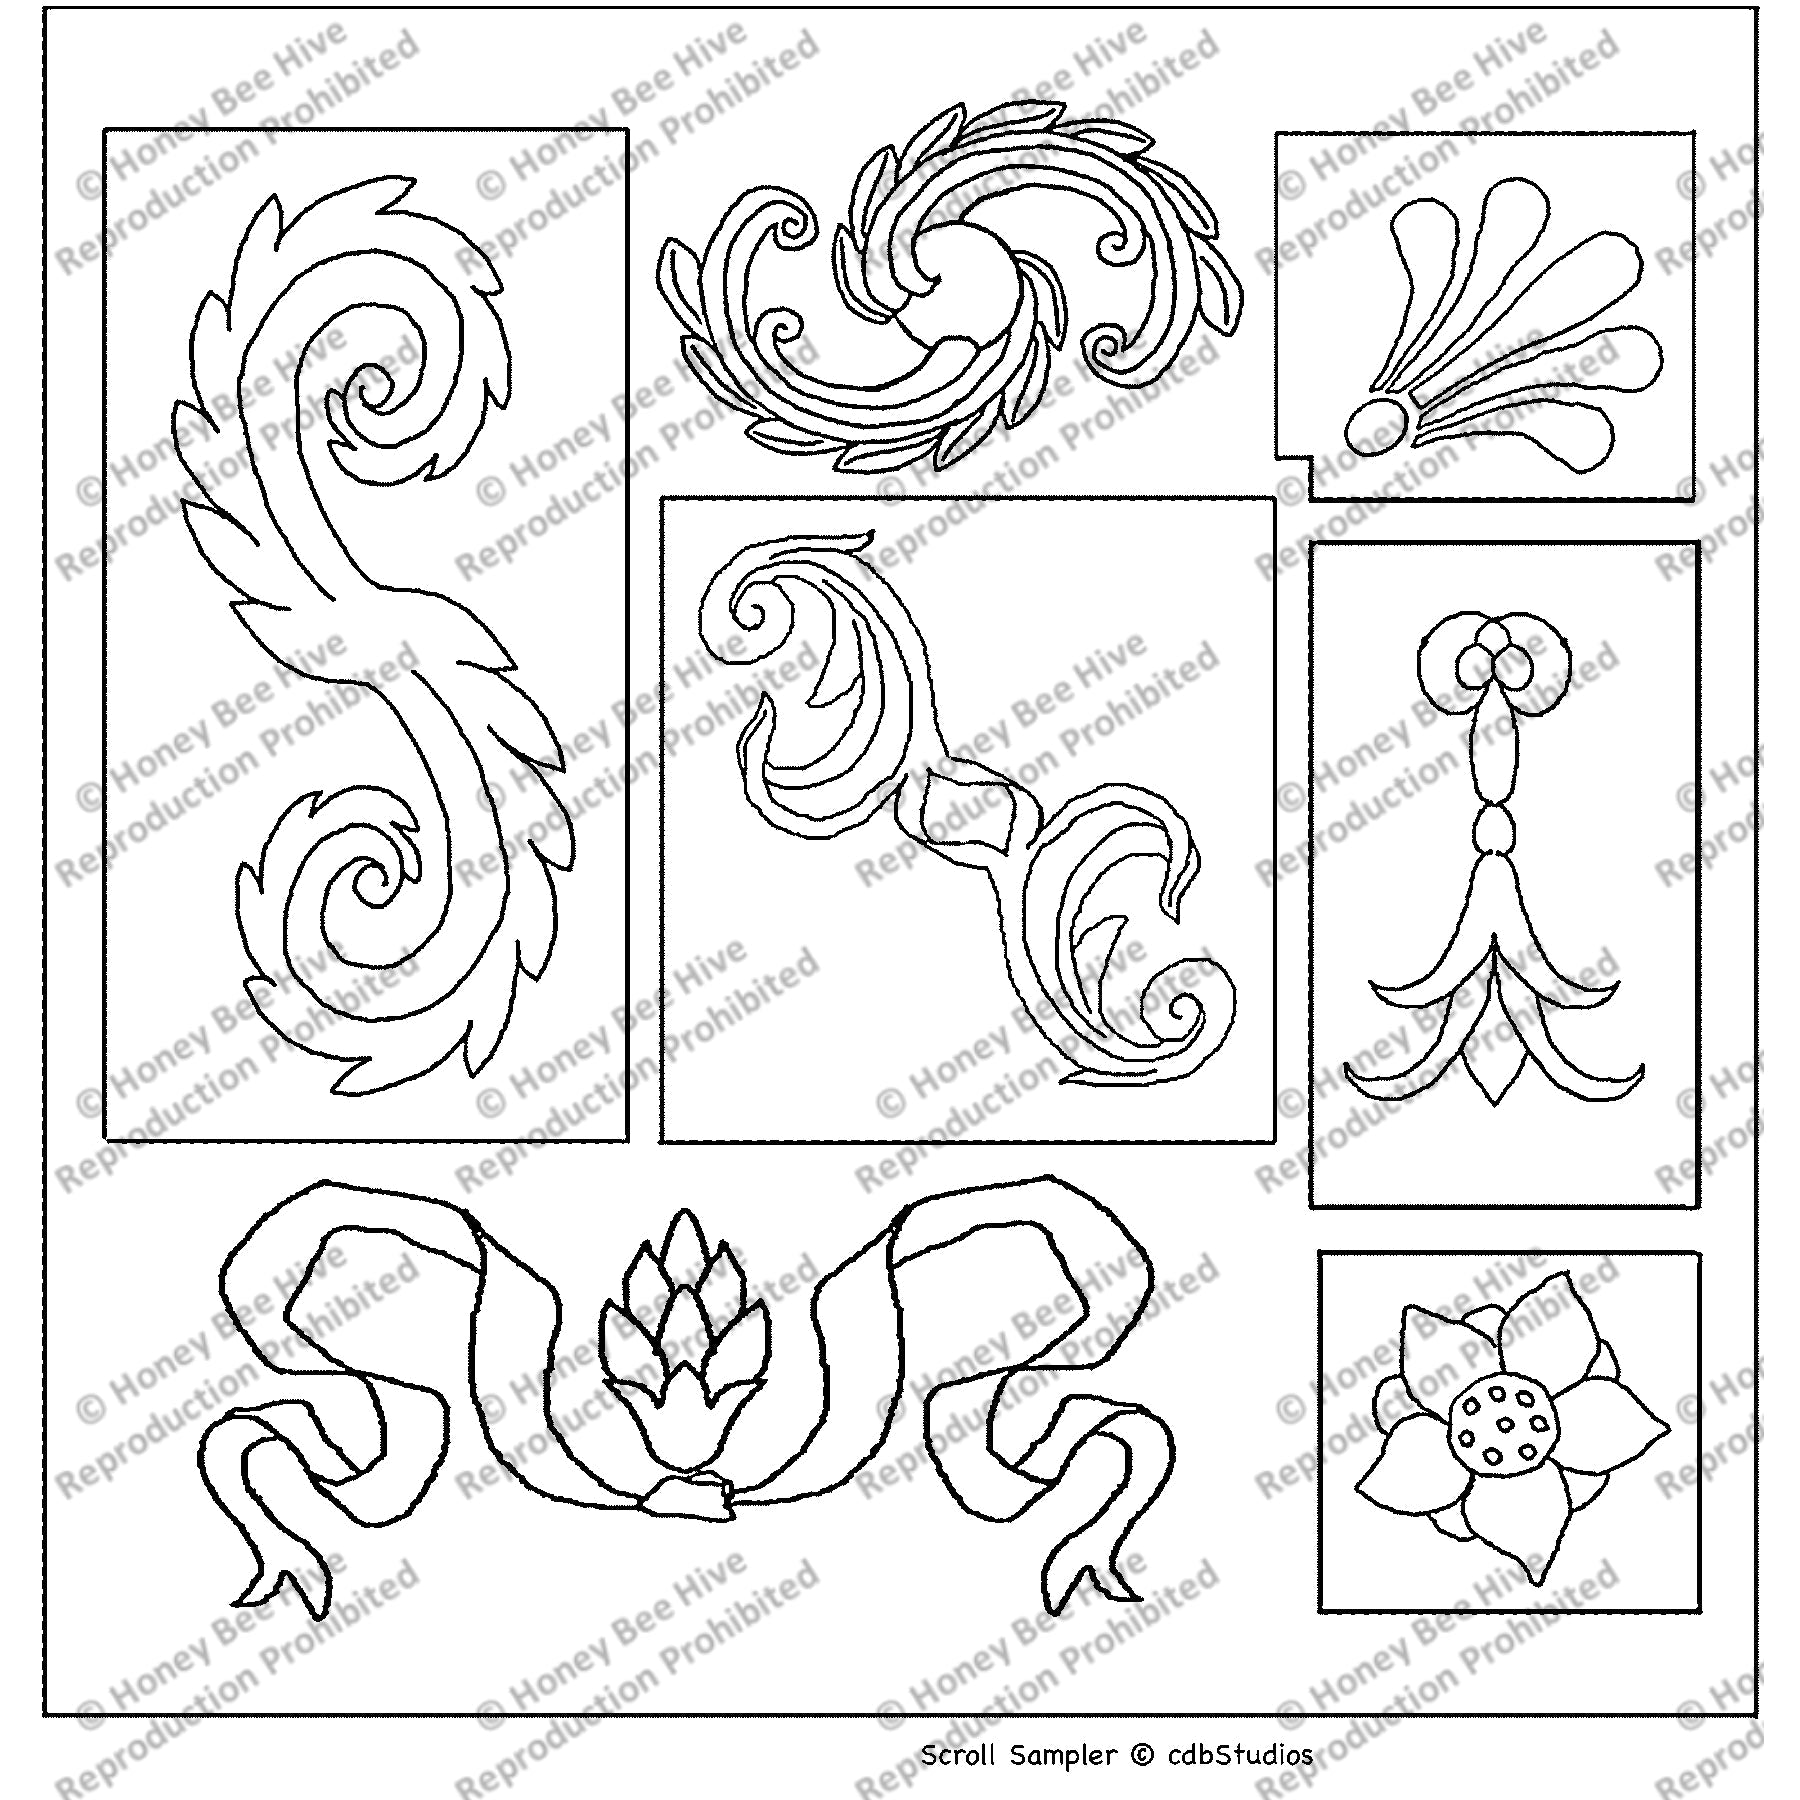 Scroll Sample, rug hooking pattern